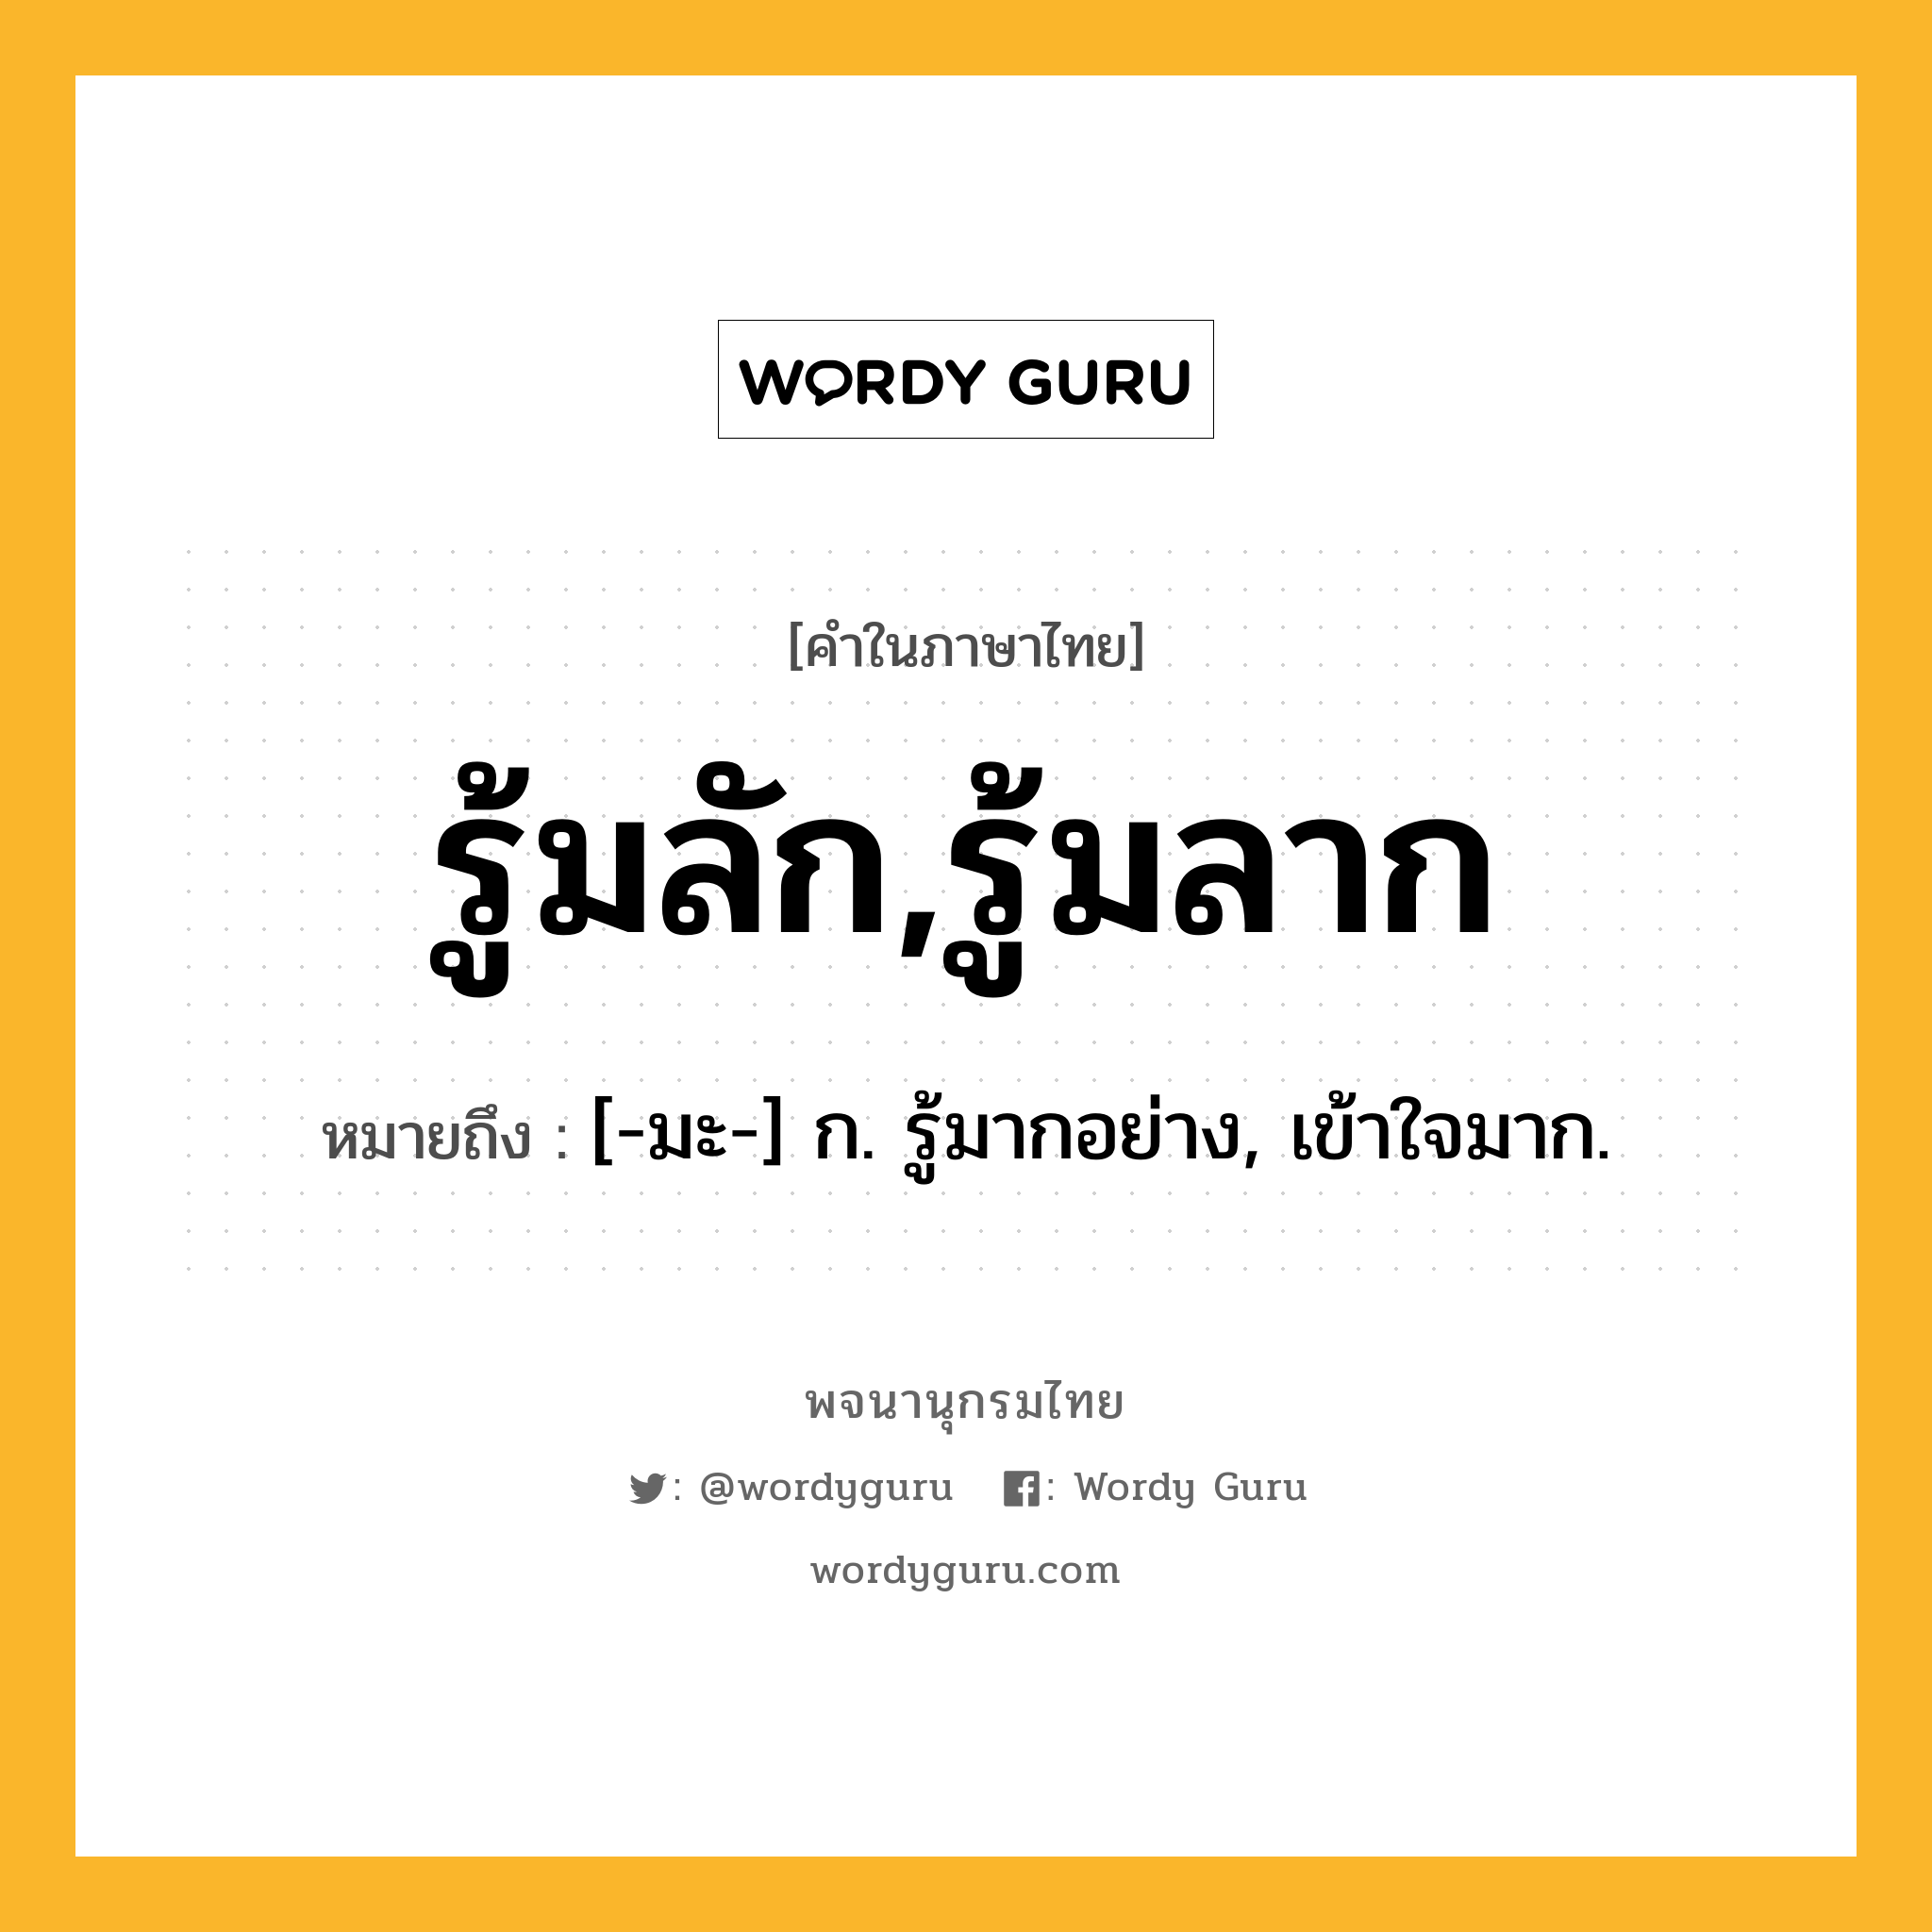 รู้มลัก,รู้มลาก ความหมาย หมายถึงอะไร?, คำในภาษาไทย รู้มลัก,รู้มลาก หมายถึง [-มะ-] ก. รู้มากอย่าง, เข้าใจมาก.